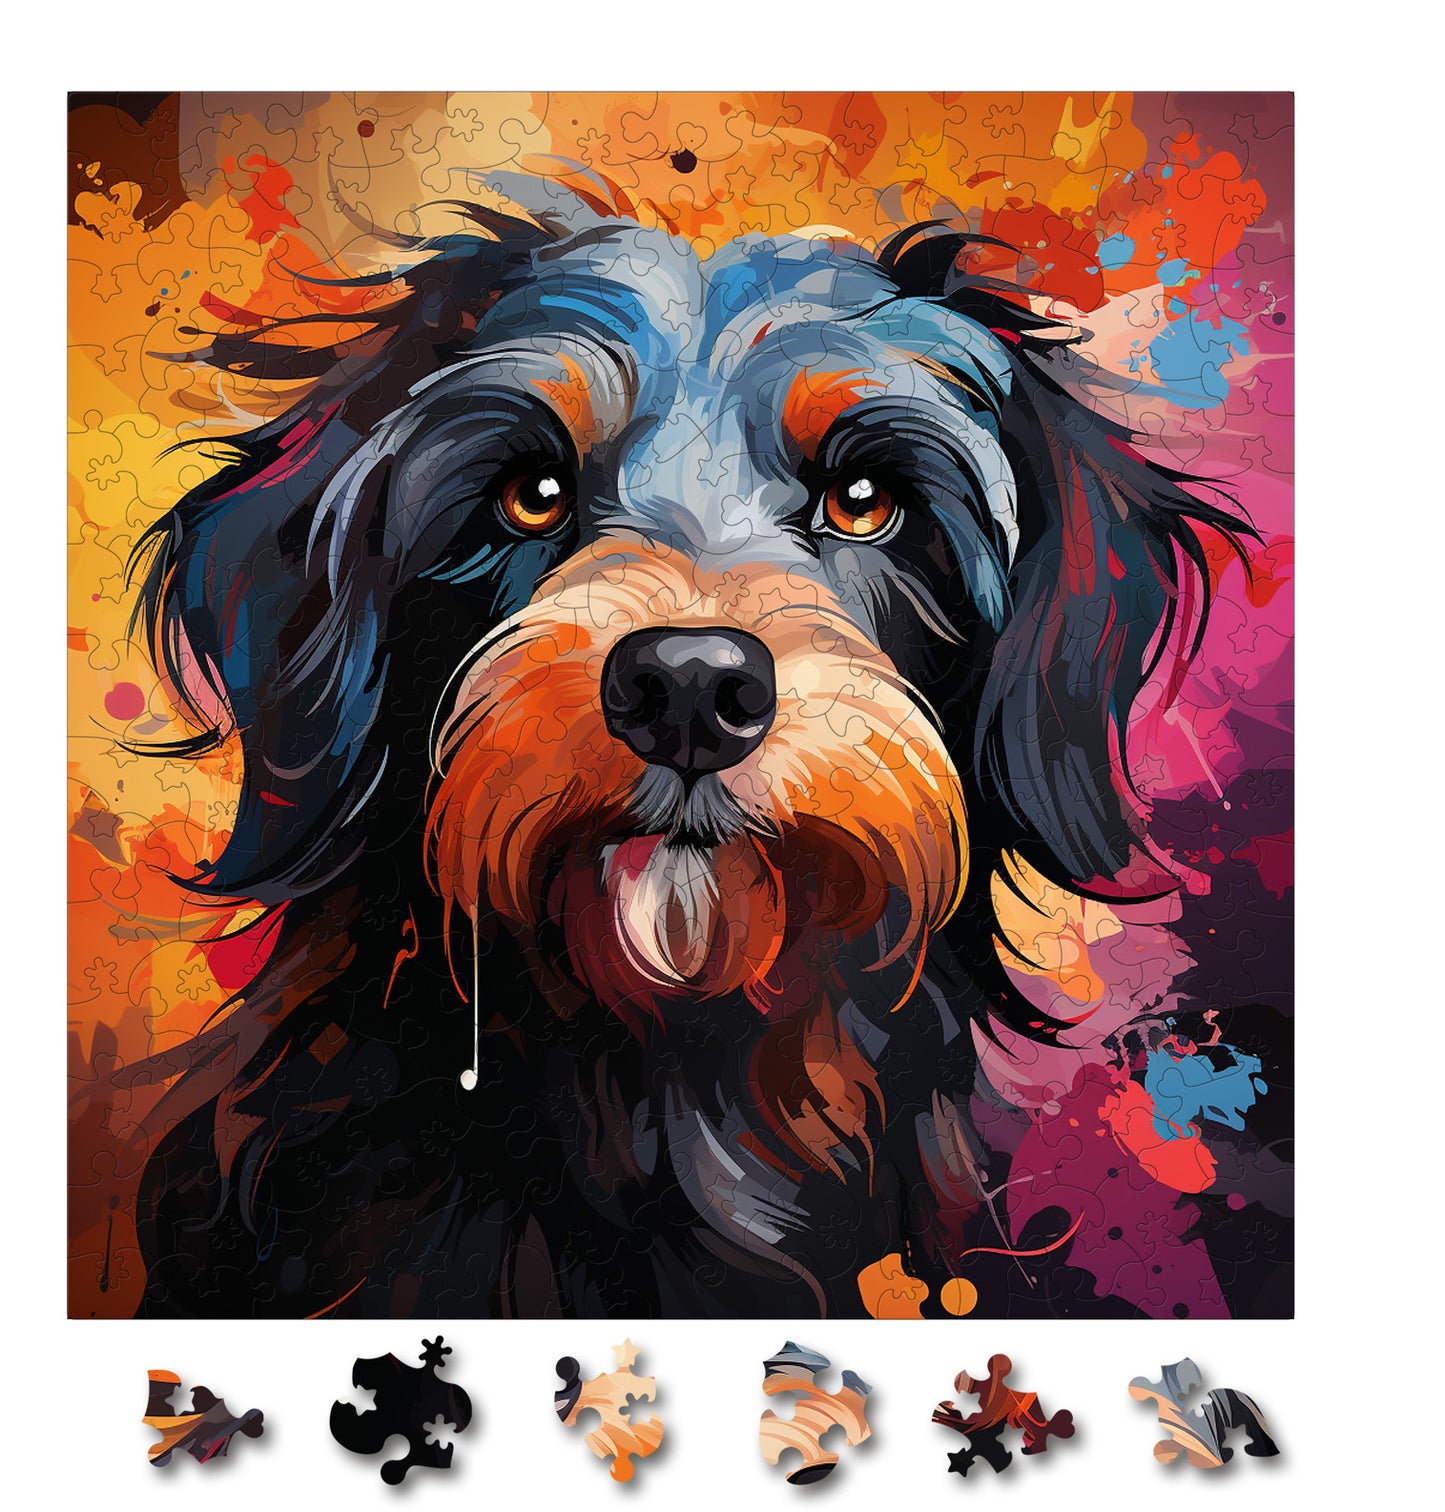 Puzzle cu Animale - Caini - Tibetan Terrier 3 - 200 piese - 30 x 30 cm